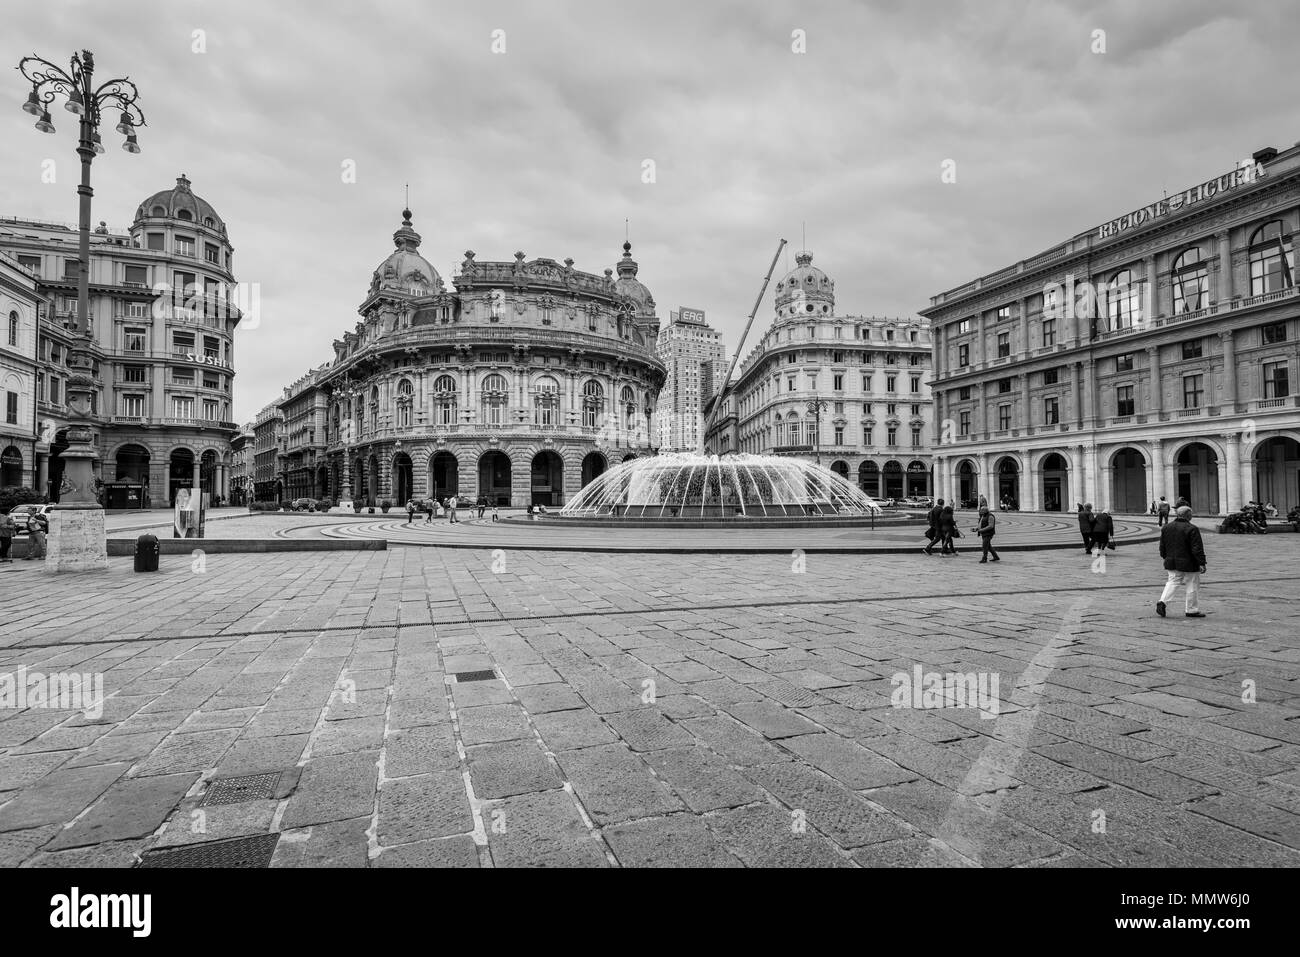 Génova, Italia - 14 de mayo de 2017: Vista de la bolsa (Nuova borsa valori) detrás de la fuente en la Plaza de Ferrari en el centro de la ciudad de Génova, Ita Foto de stock